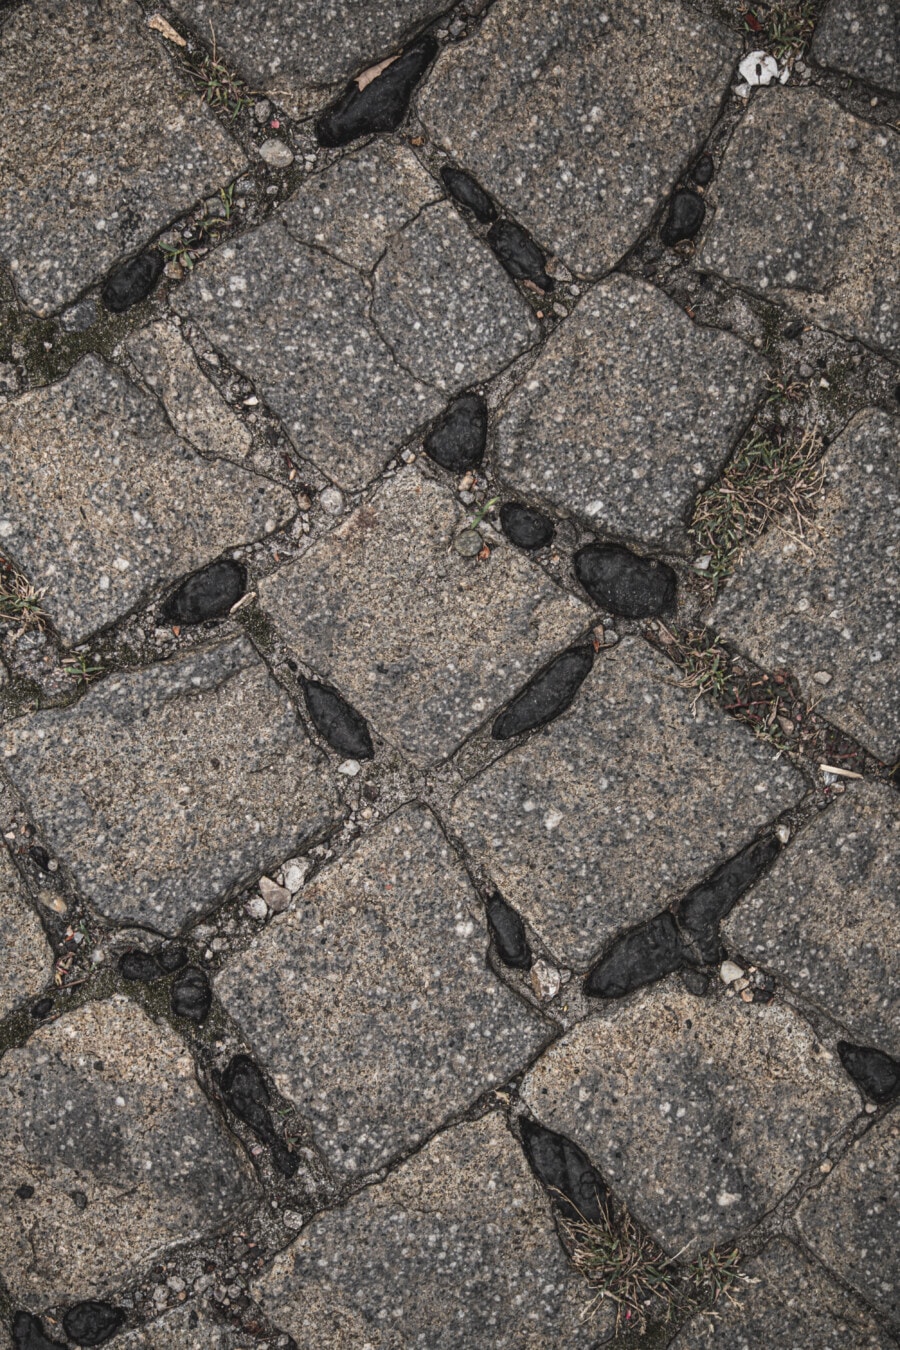 marciapiede, ciottoli, pavimentazione in pietra, granito, bitume, asfalto, carreggiata, terra, superficie, pietra